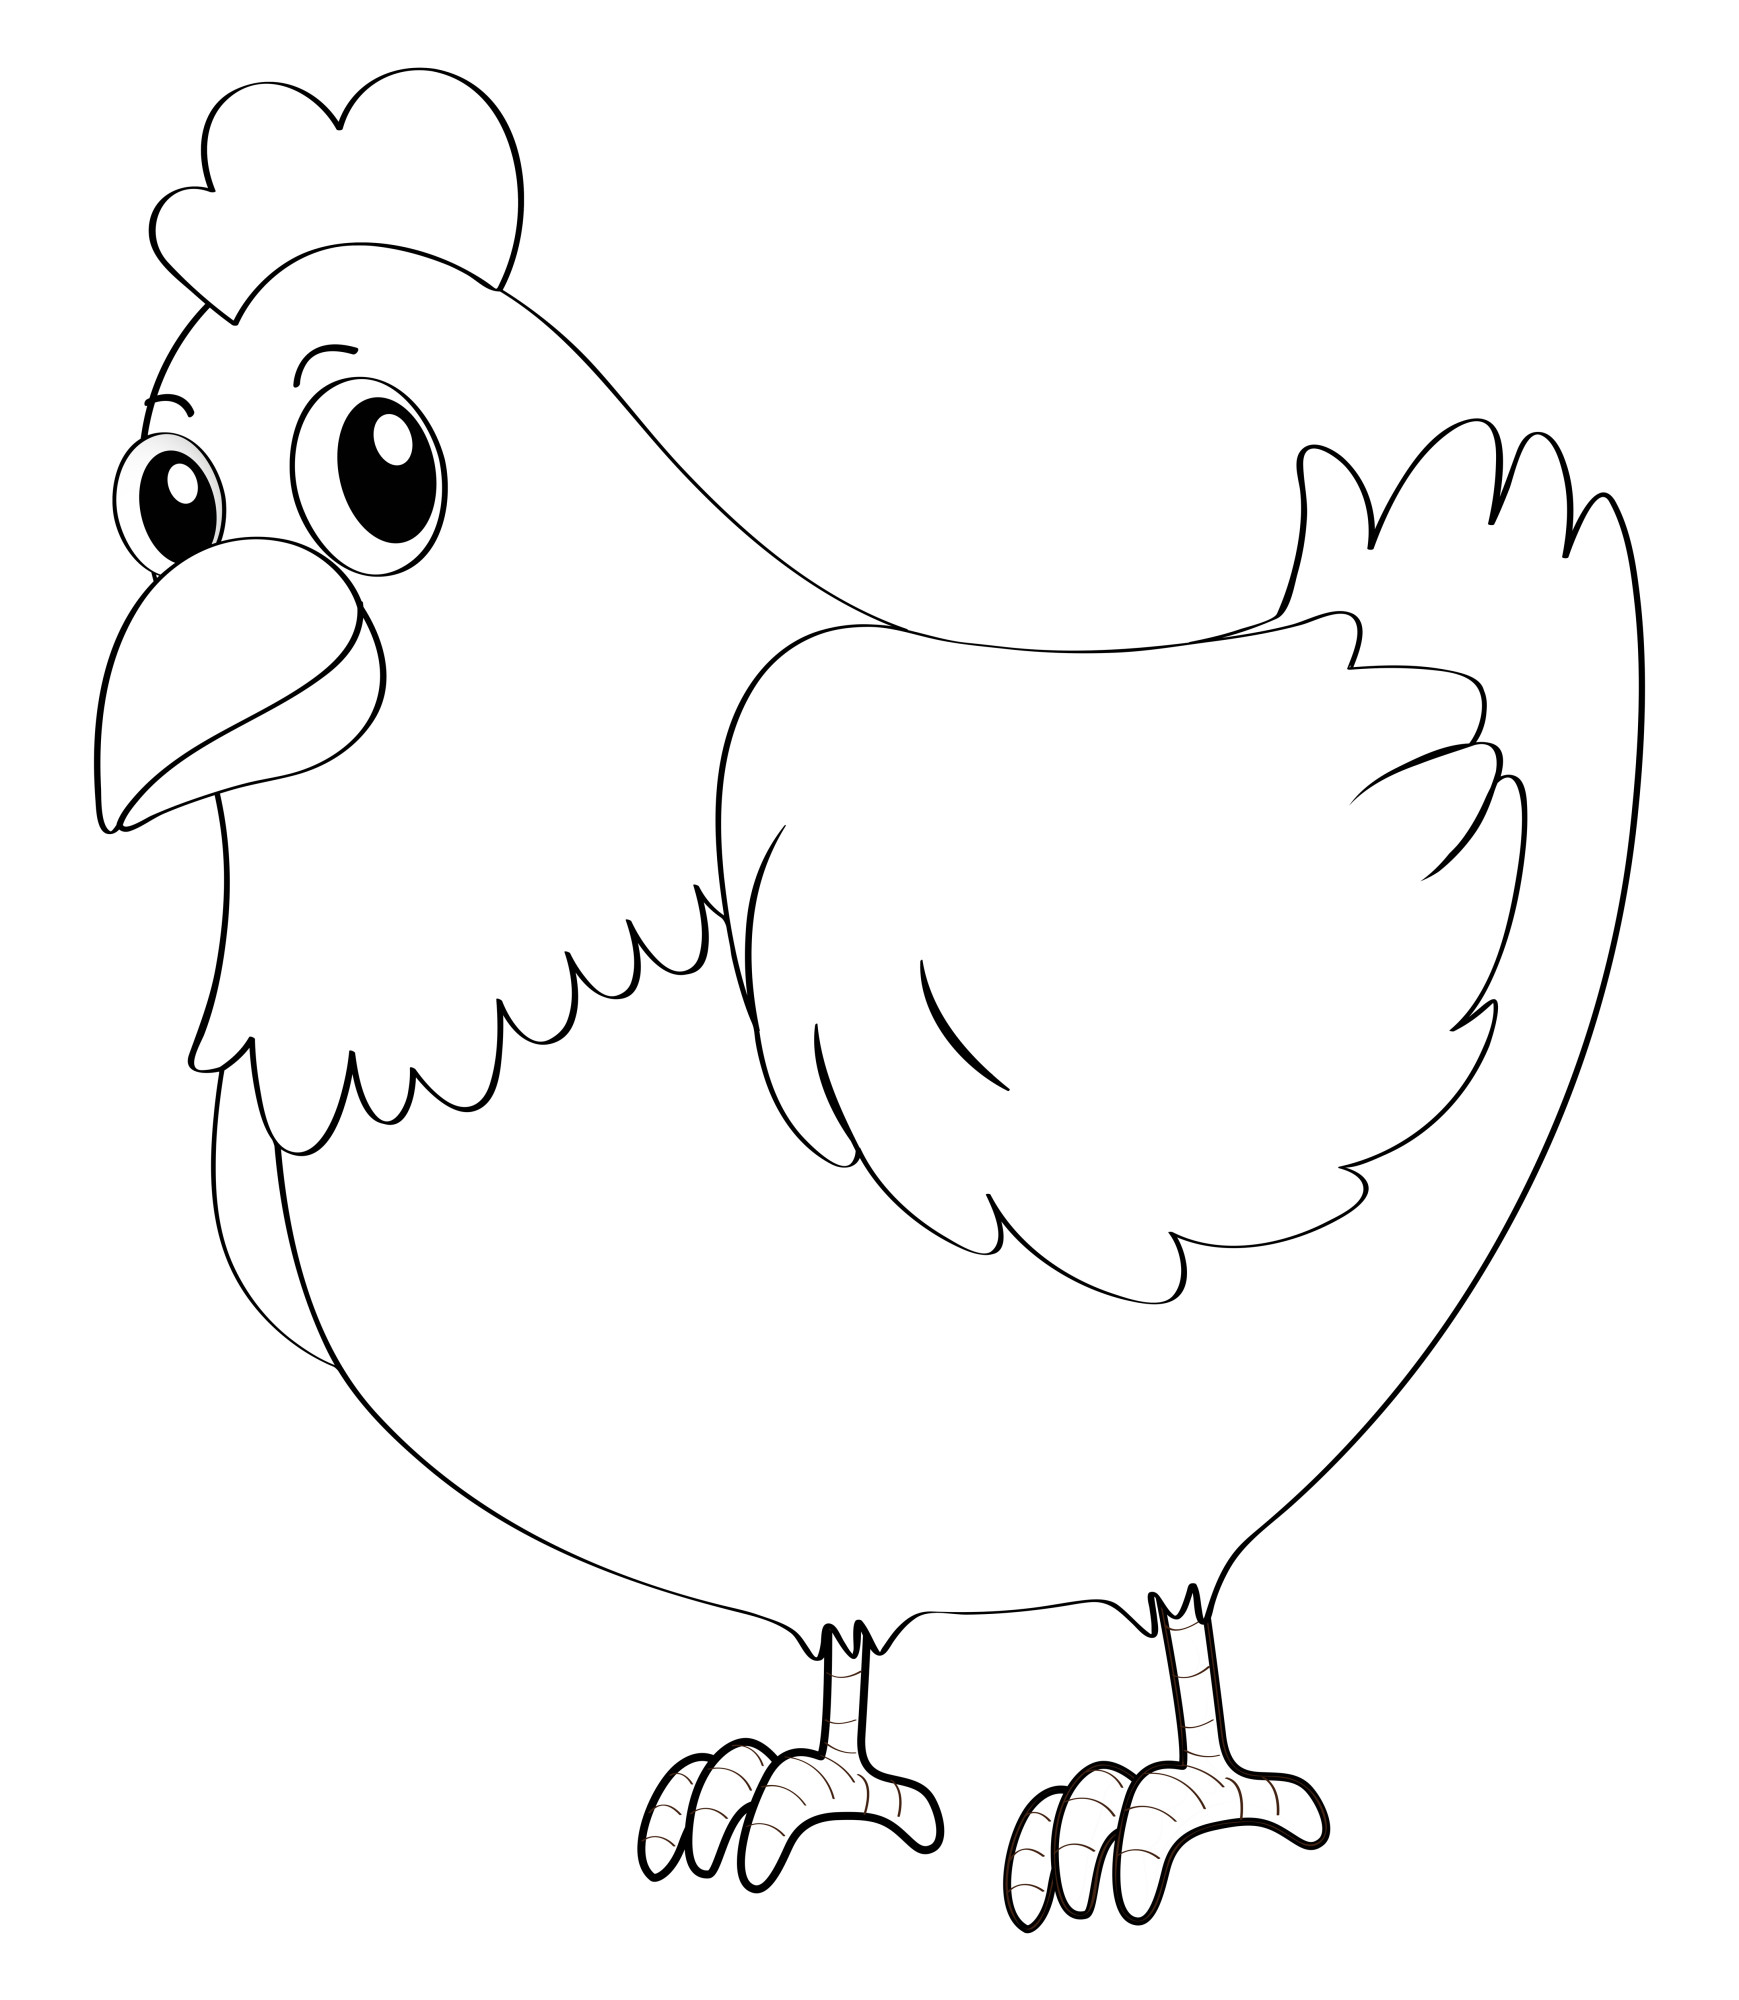 Раскраска для детей: курица с большими глазами